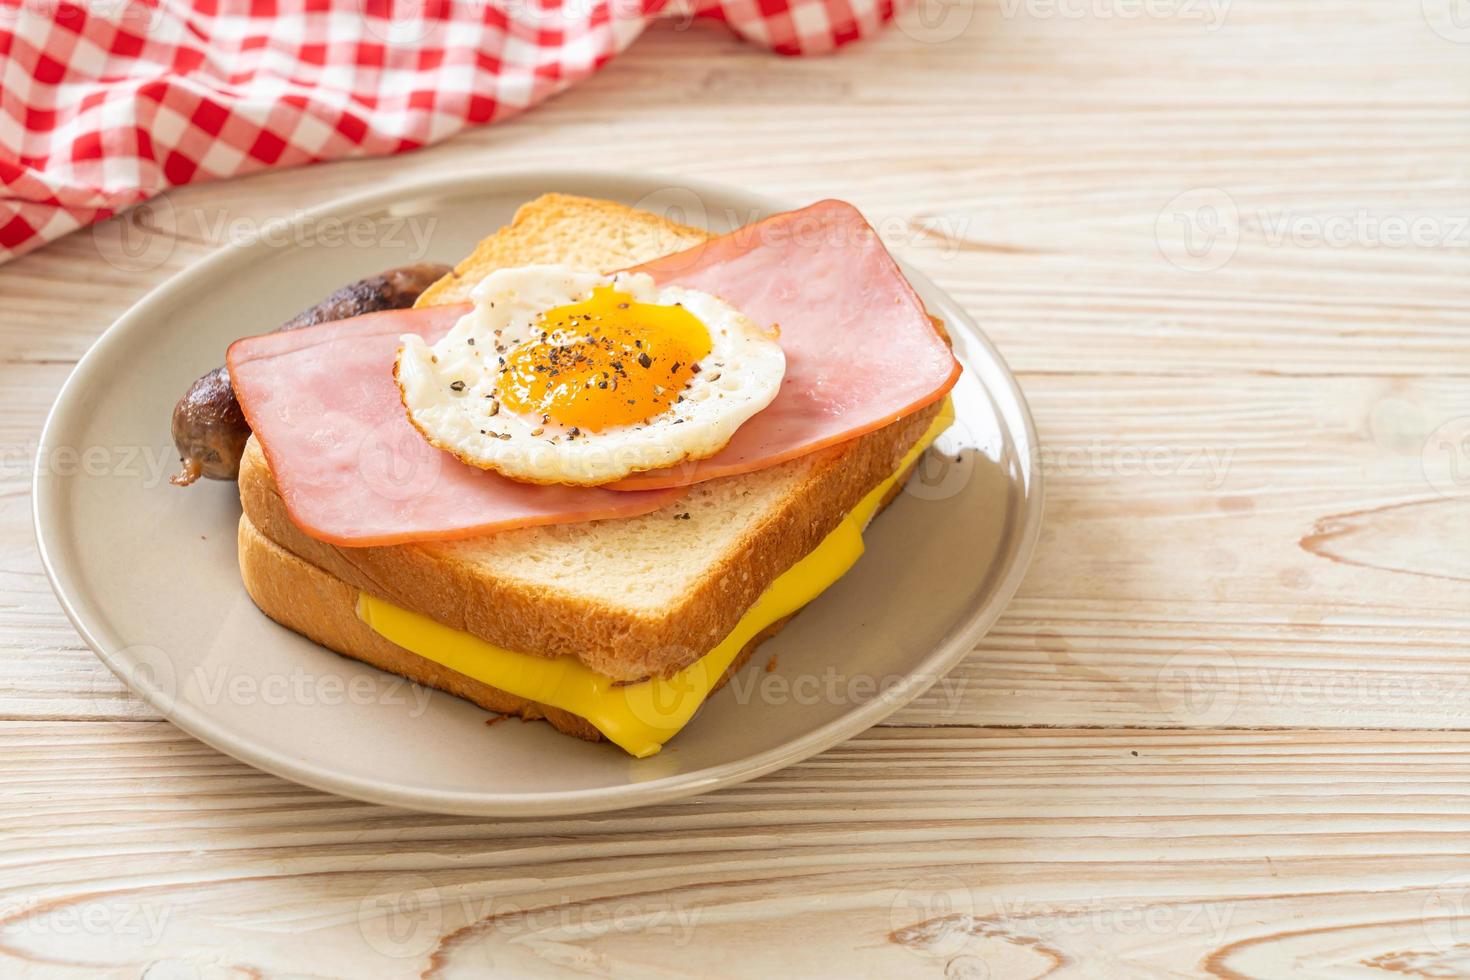 pane fatto in casa formaggio tostato condita con prosciutto e uovo fritto con salsiccia di maiale per colazione foto